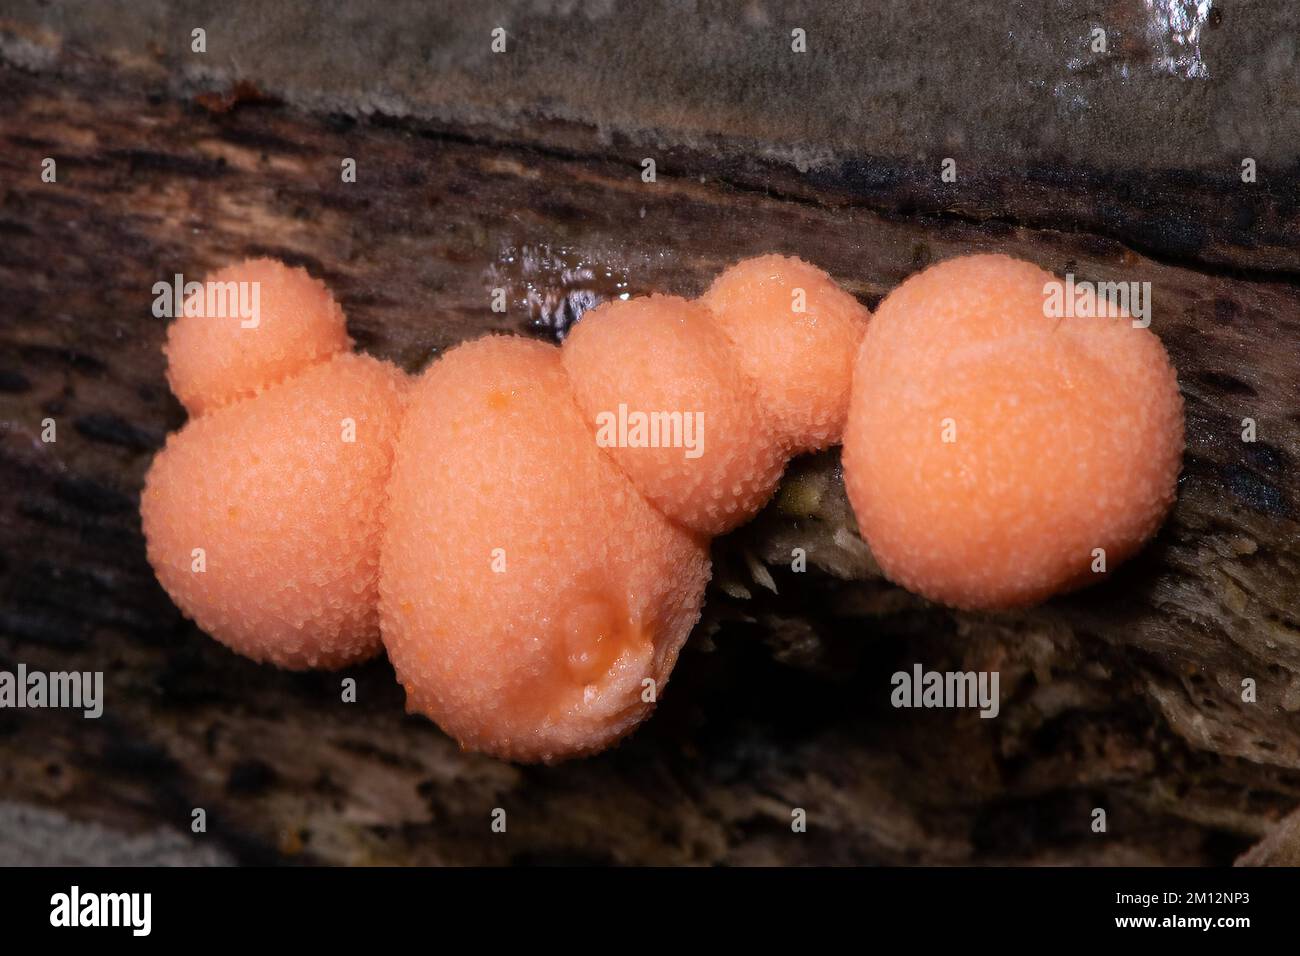 Fungo di latte di sangue sei salmoni rossi fruttanti corpi accanto l'uno all'altro sul tronco dell'albero Foto Stock